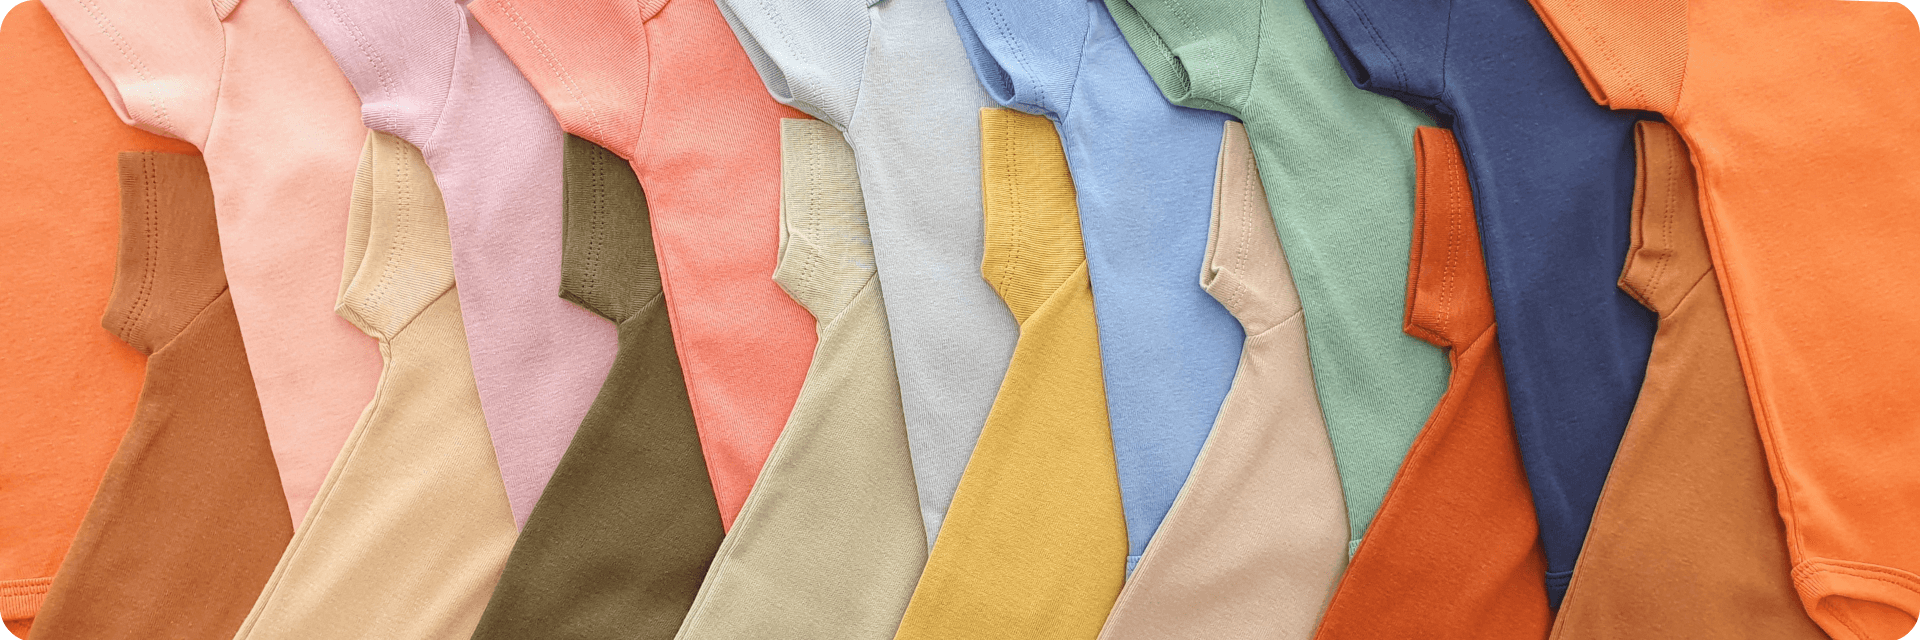 Body manga curta 100% algodão - Todas as cores Futurinhos